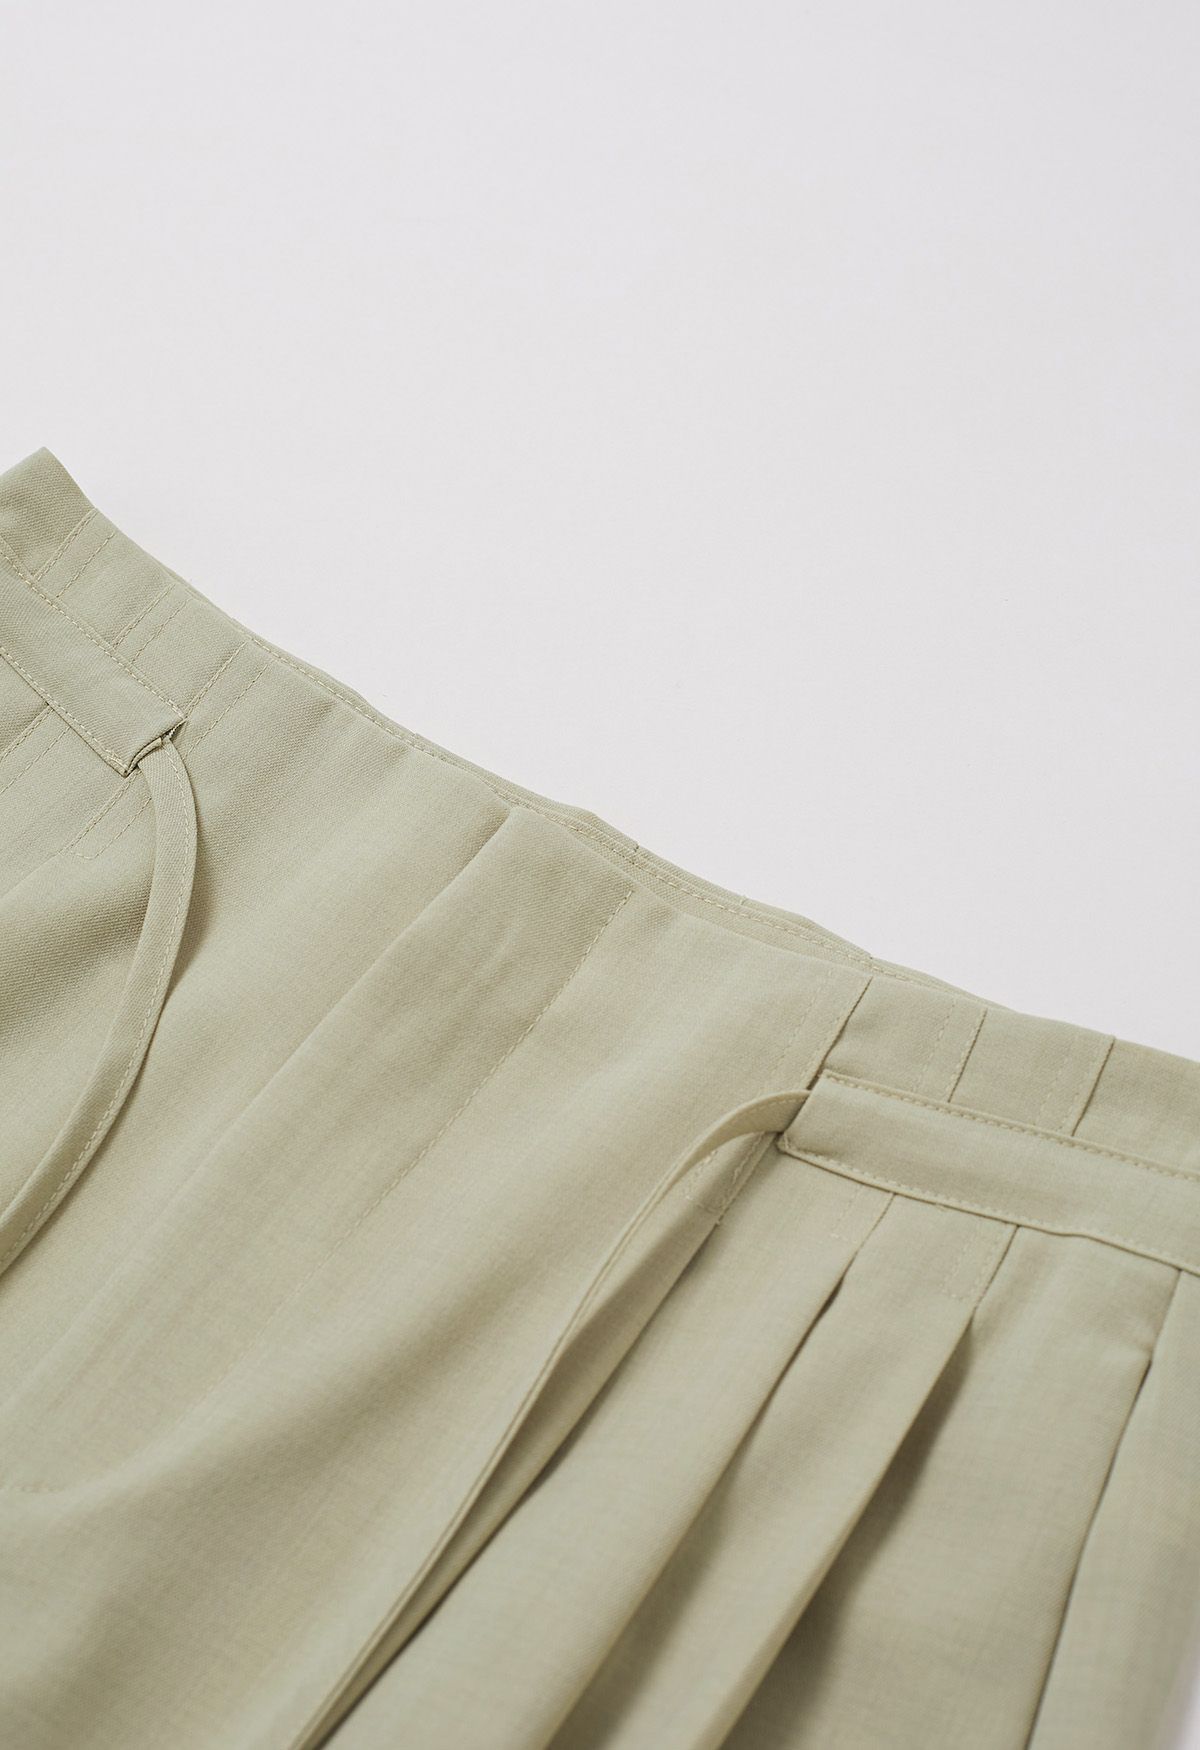 Self-Tie String Pleat Wide-Leg Pants in Pea Green